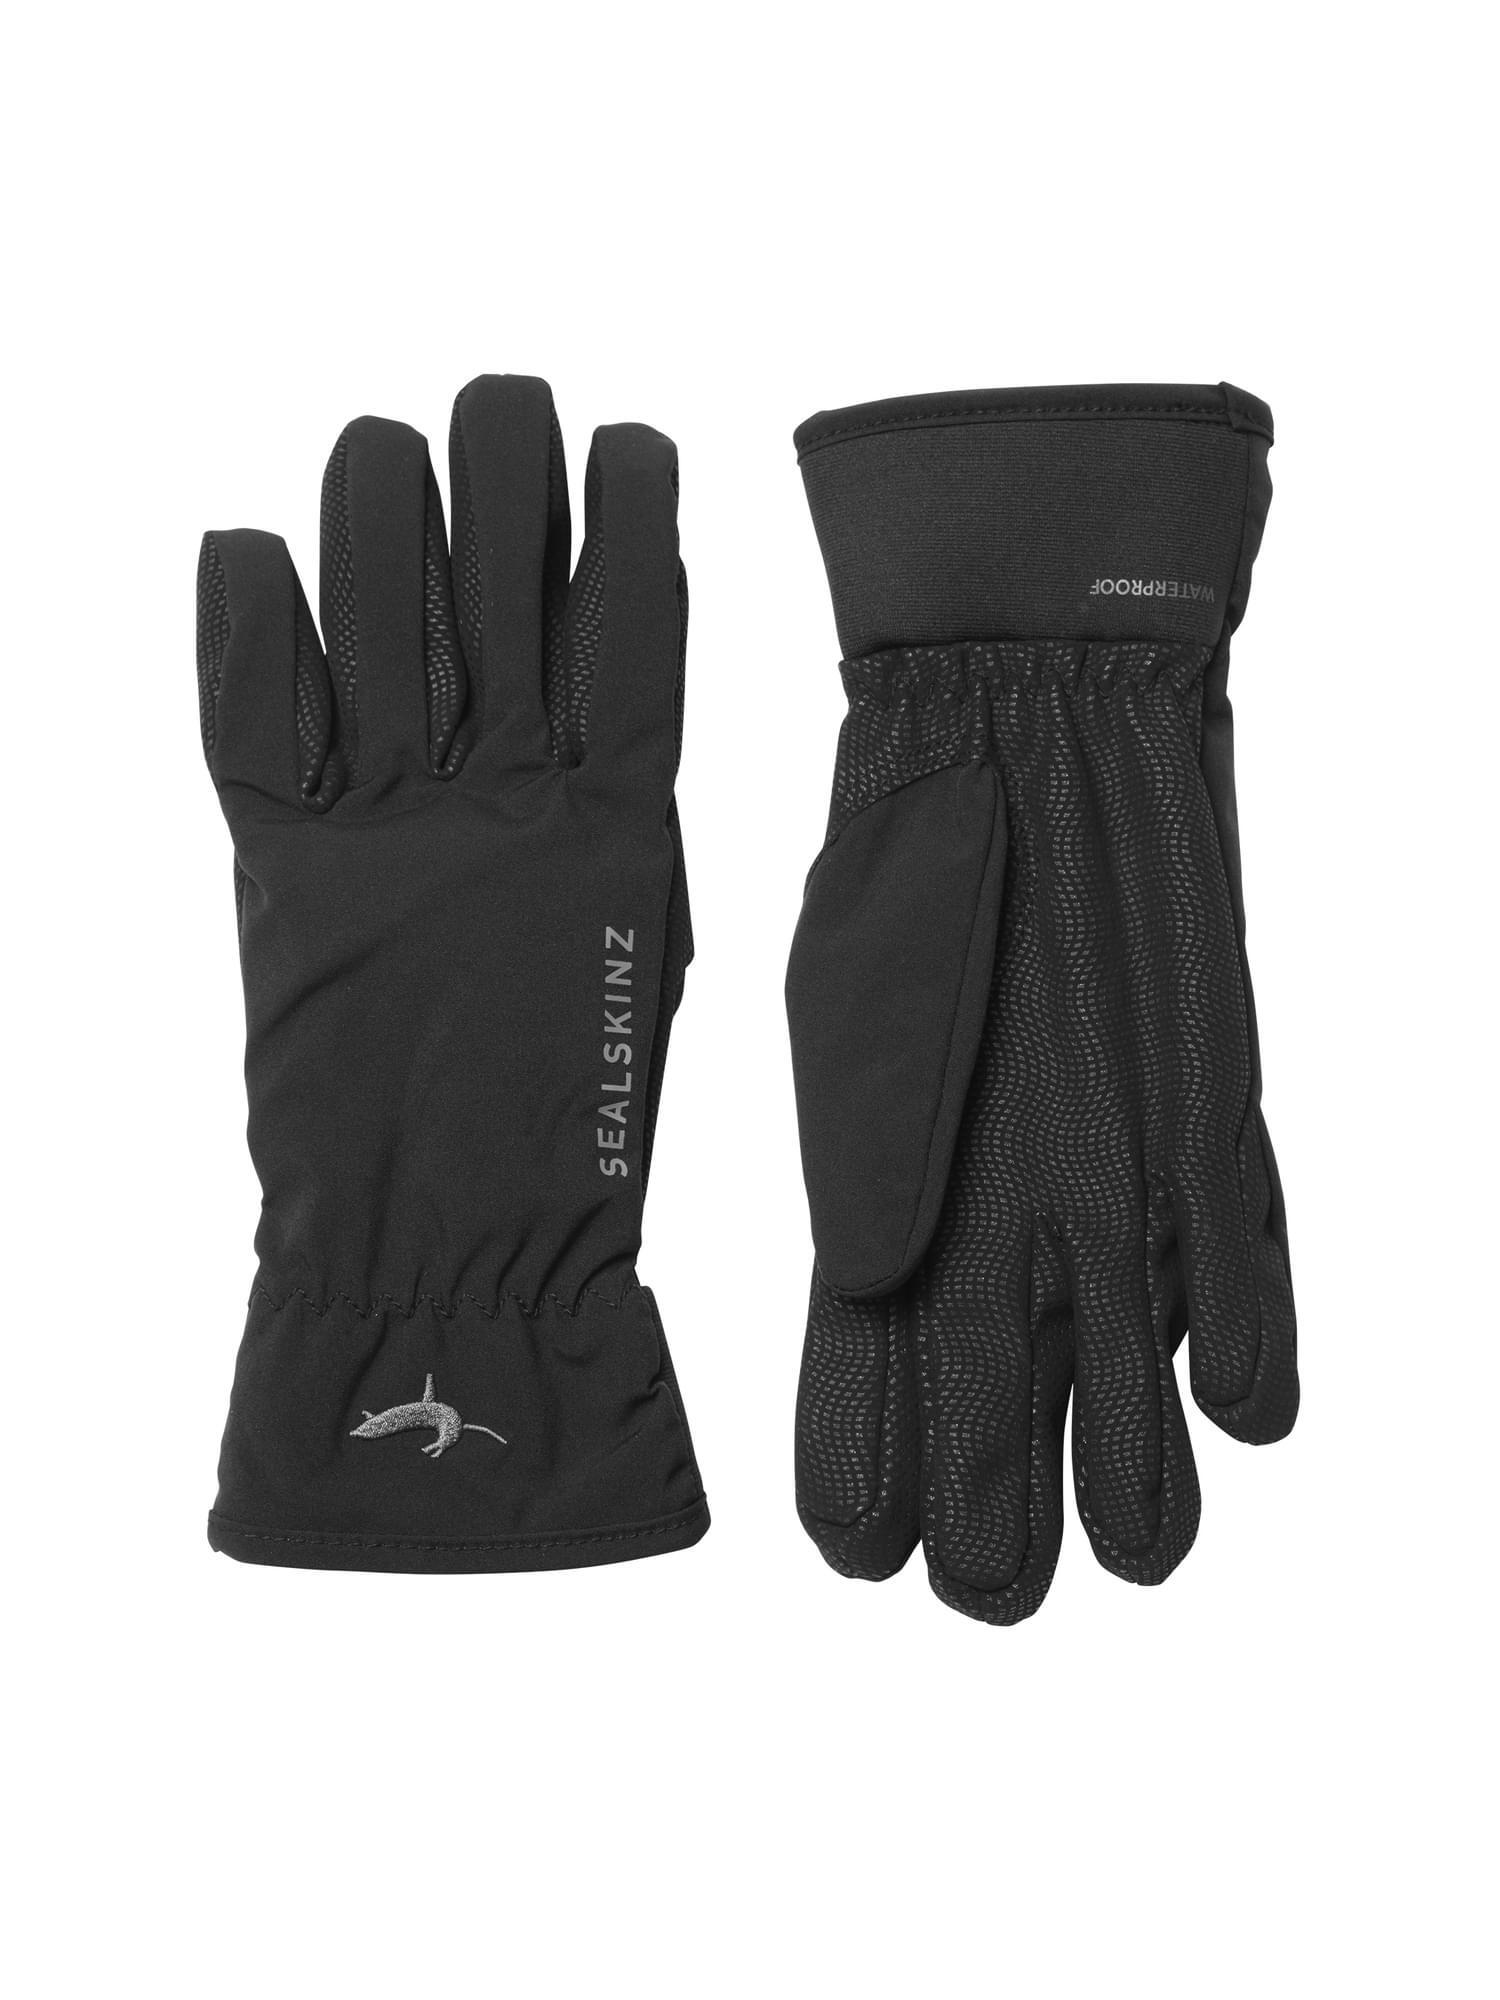 SEALSKINZ Ladies Waterproof All Weather Lightweight Gloves